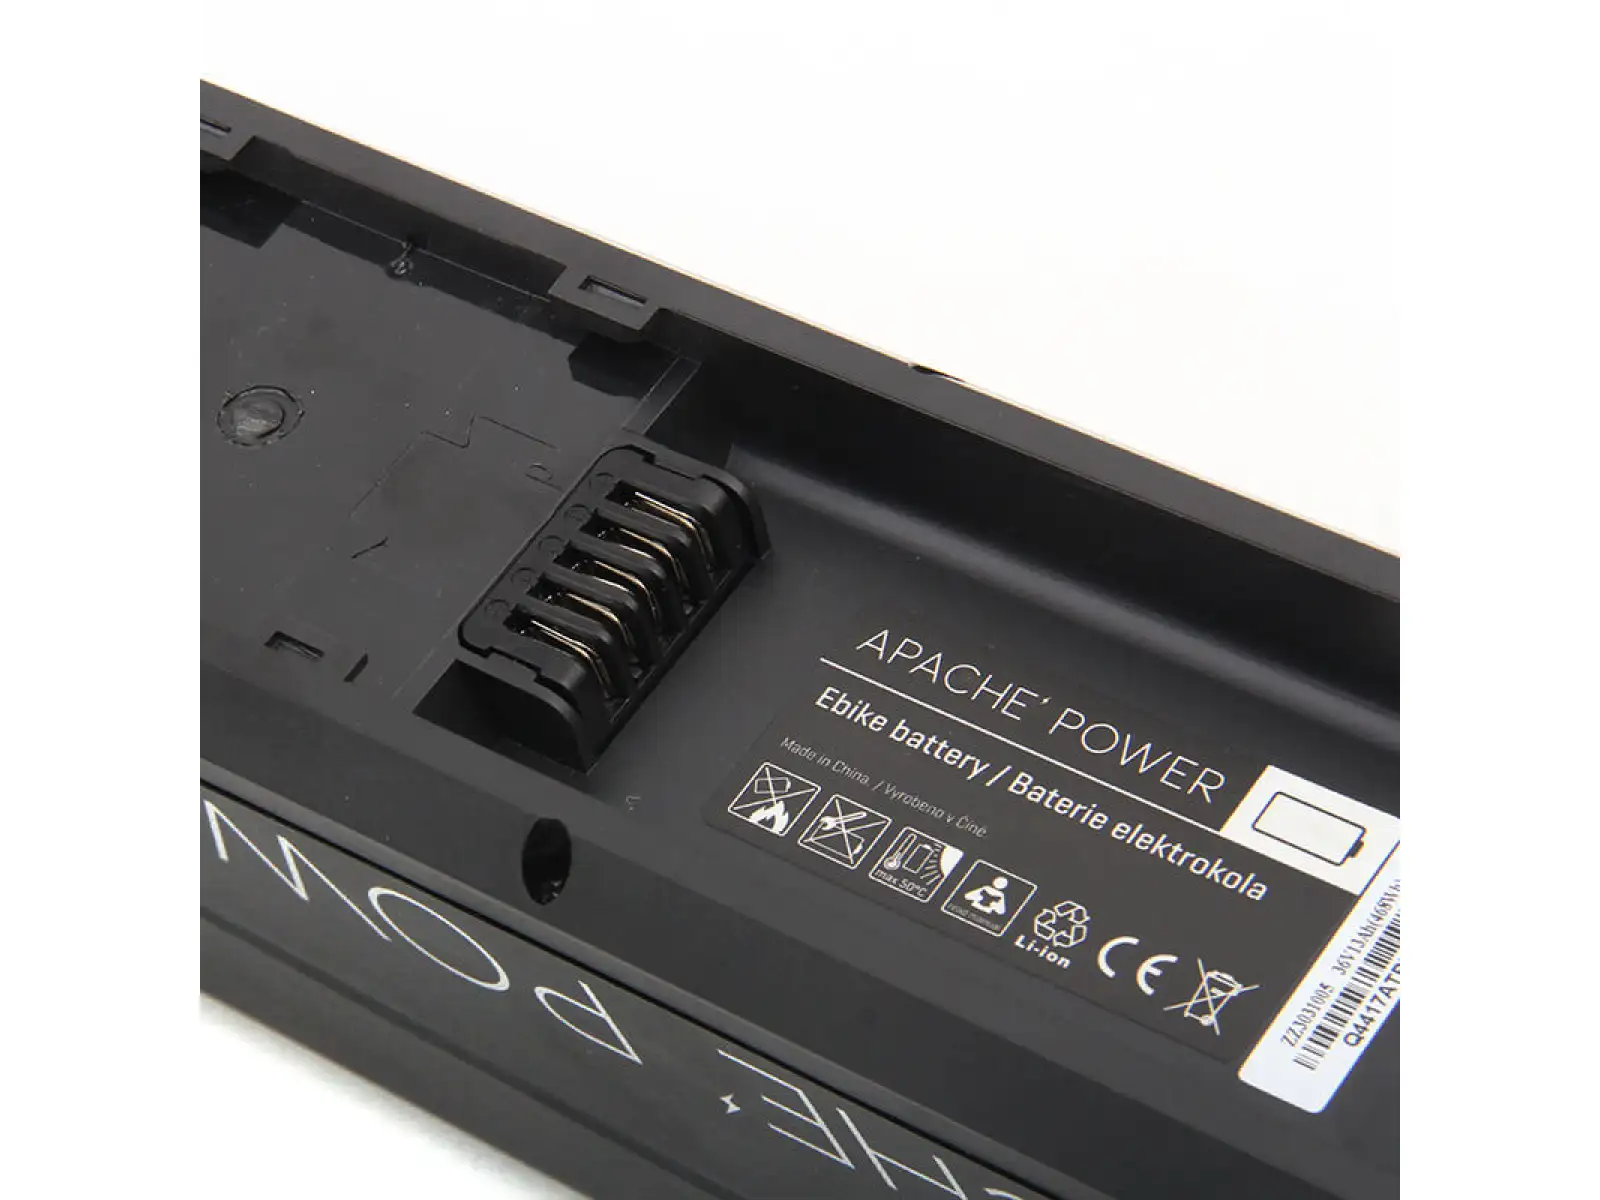 Baterie Apache Power R7 rámová Li-Ion 36V 19,2 Ah/691 Wh konektor nože